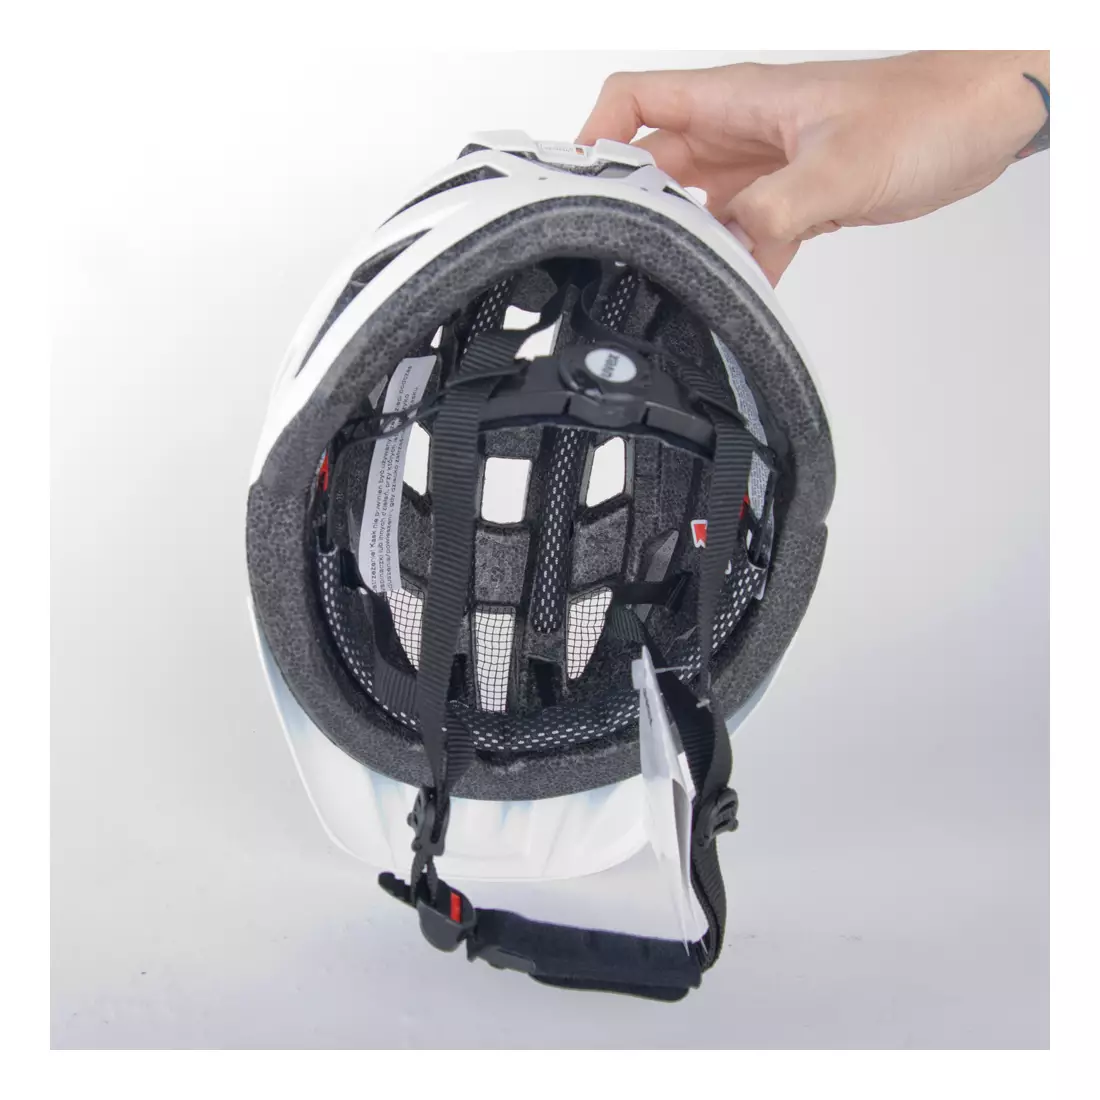 Bicycle helmet UVEX I-vo cc white matt